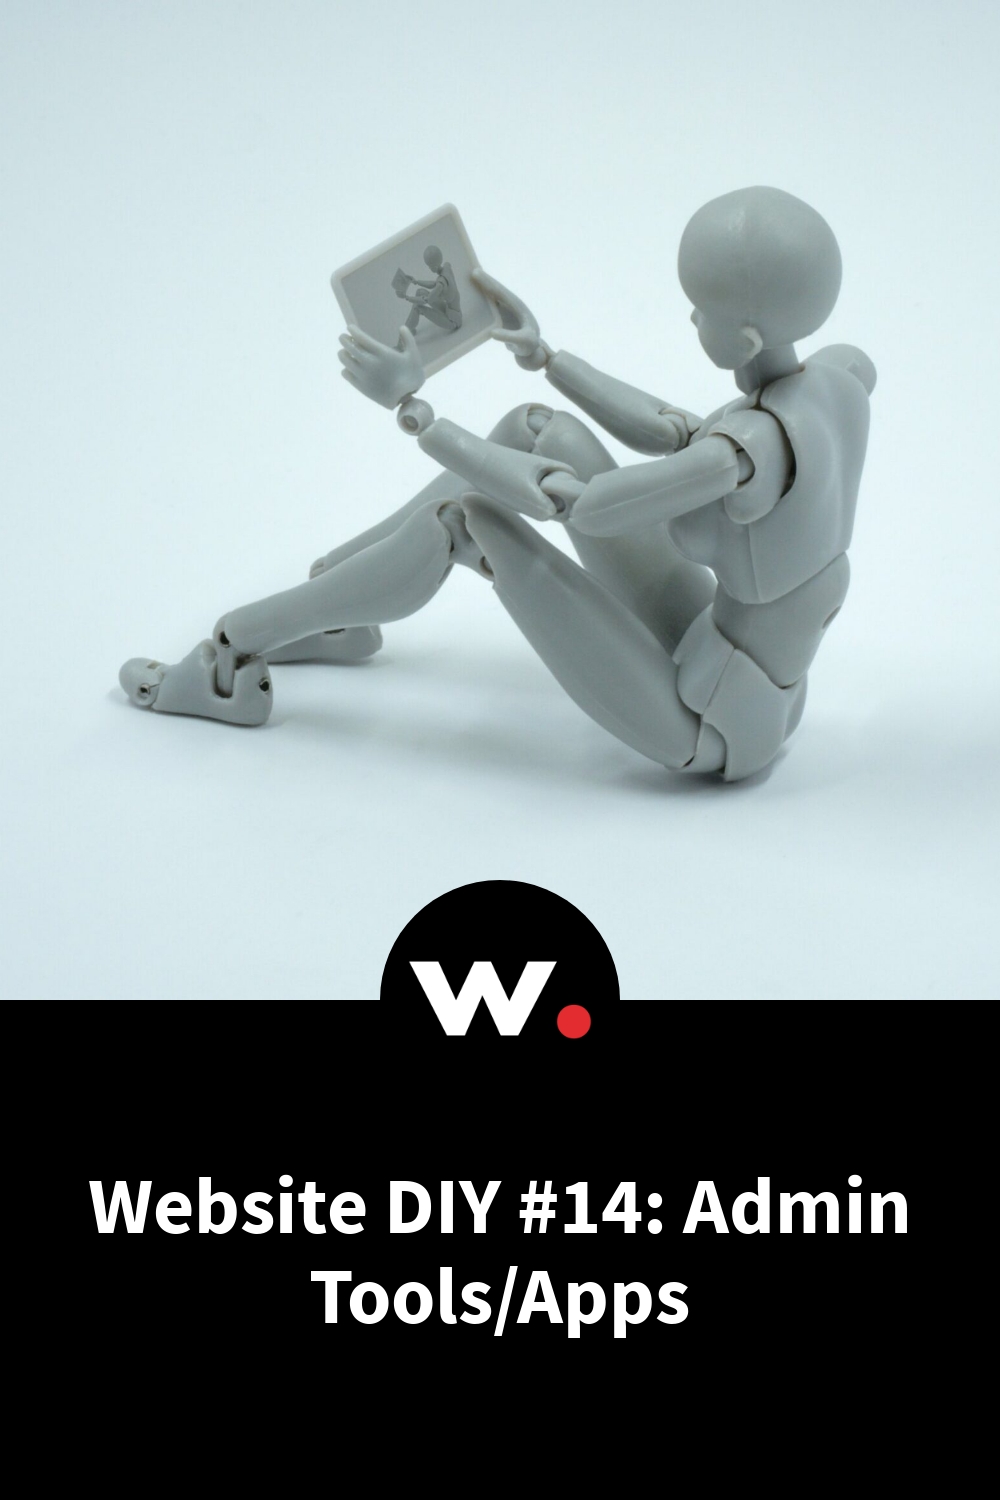 Website DIY #14: Admin Tools/Apps